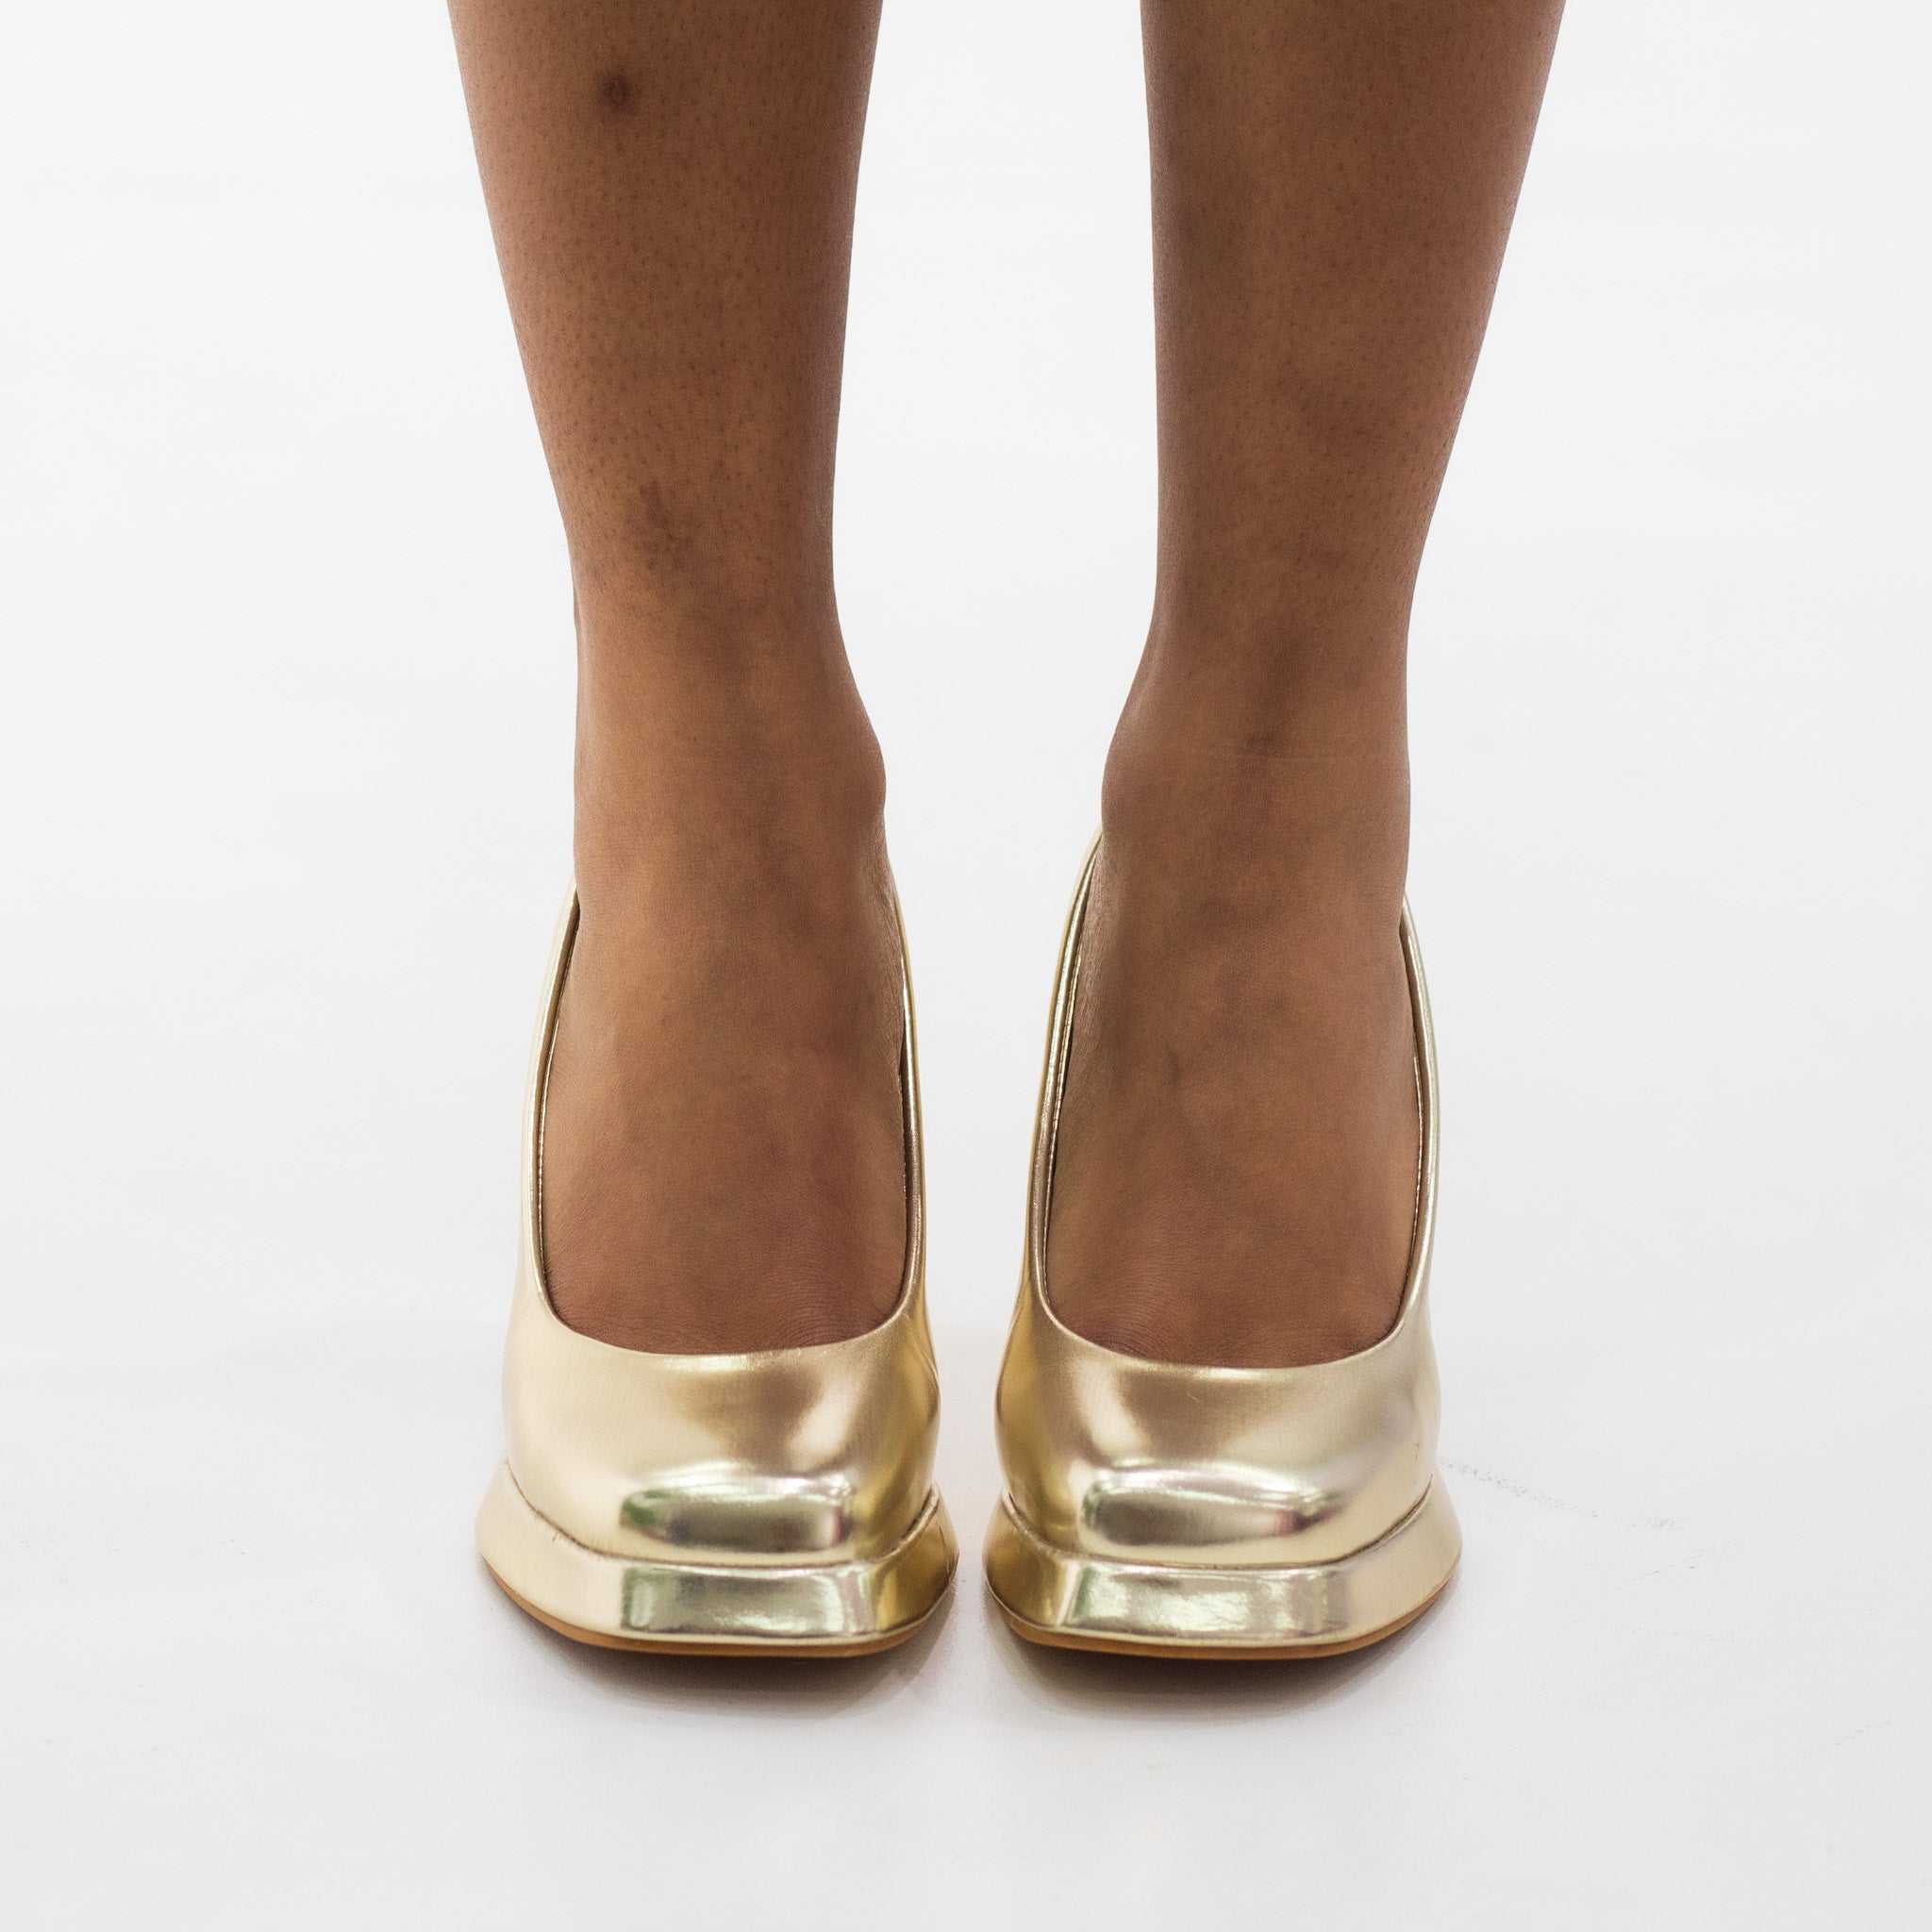 Gold 9cm heel platform court shoe concorde